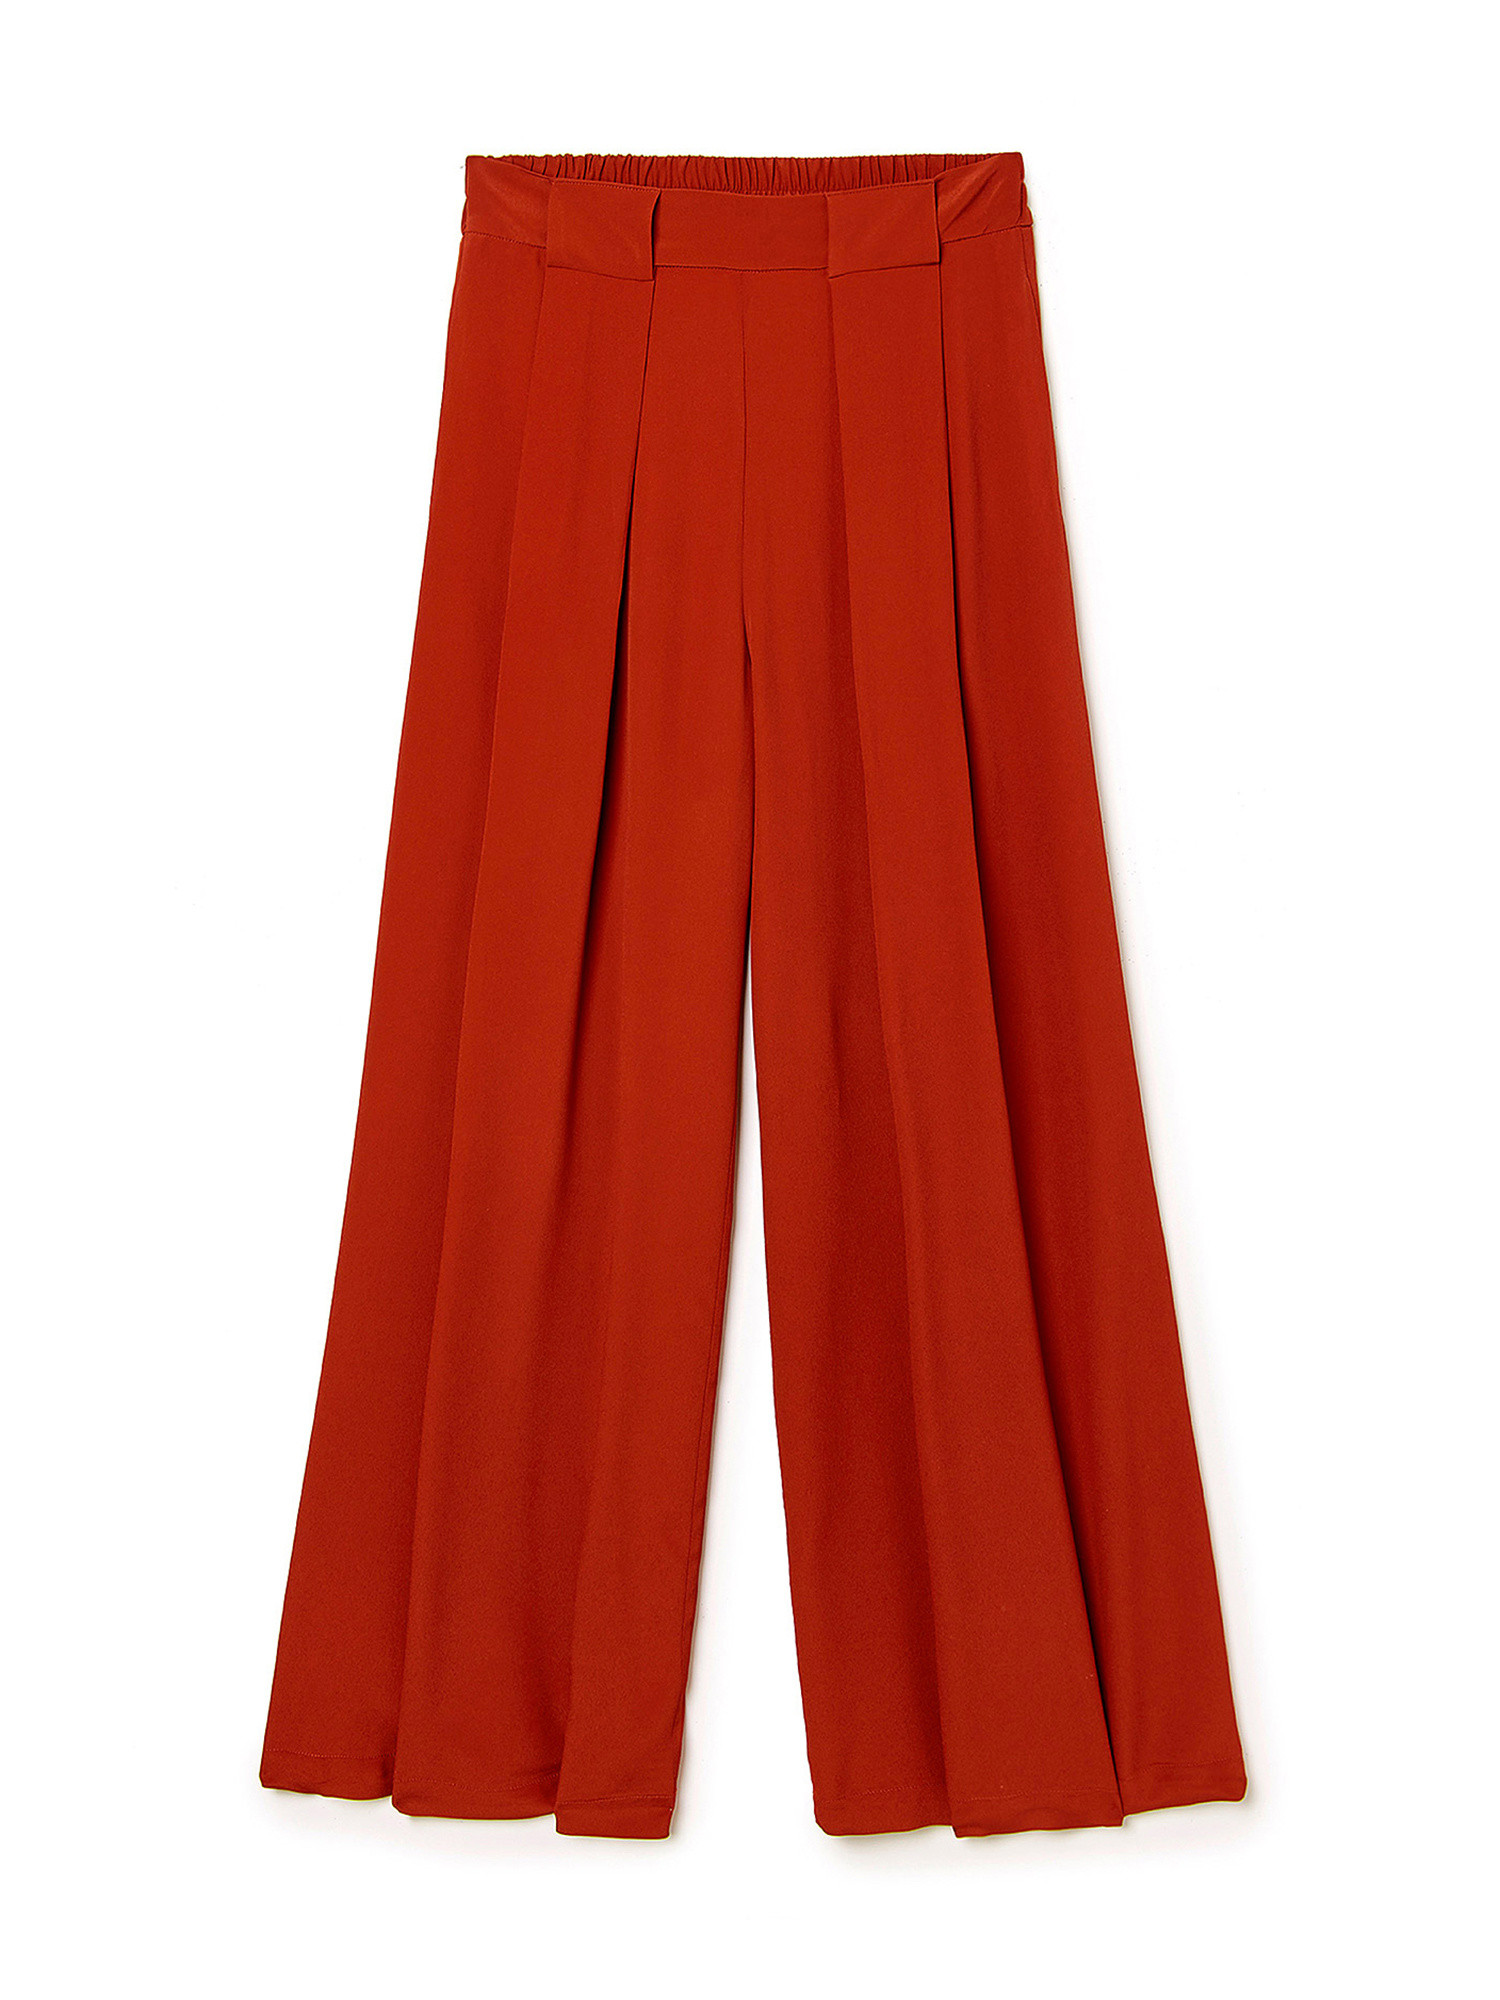 Pantaloni Aspen in misto cràªpe-seta, Rosso, large image number 3